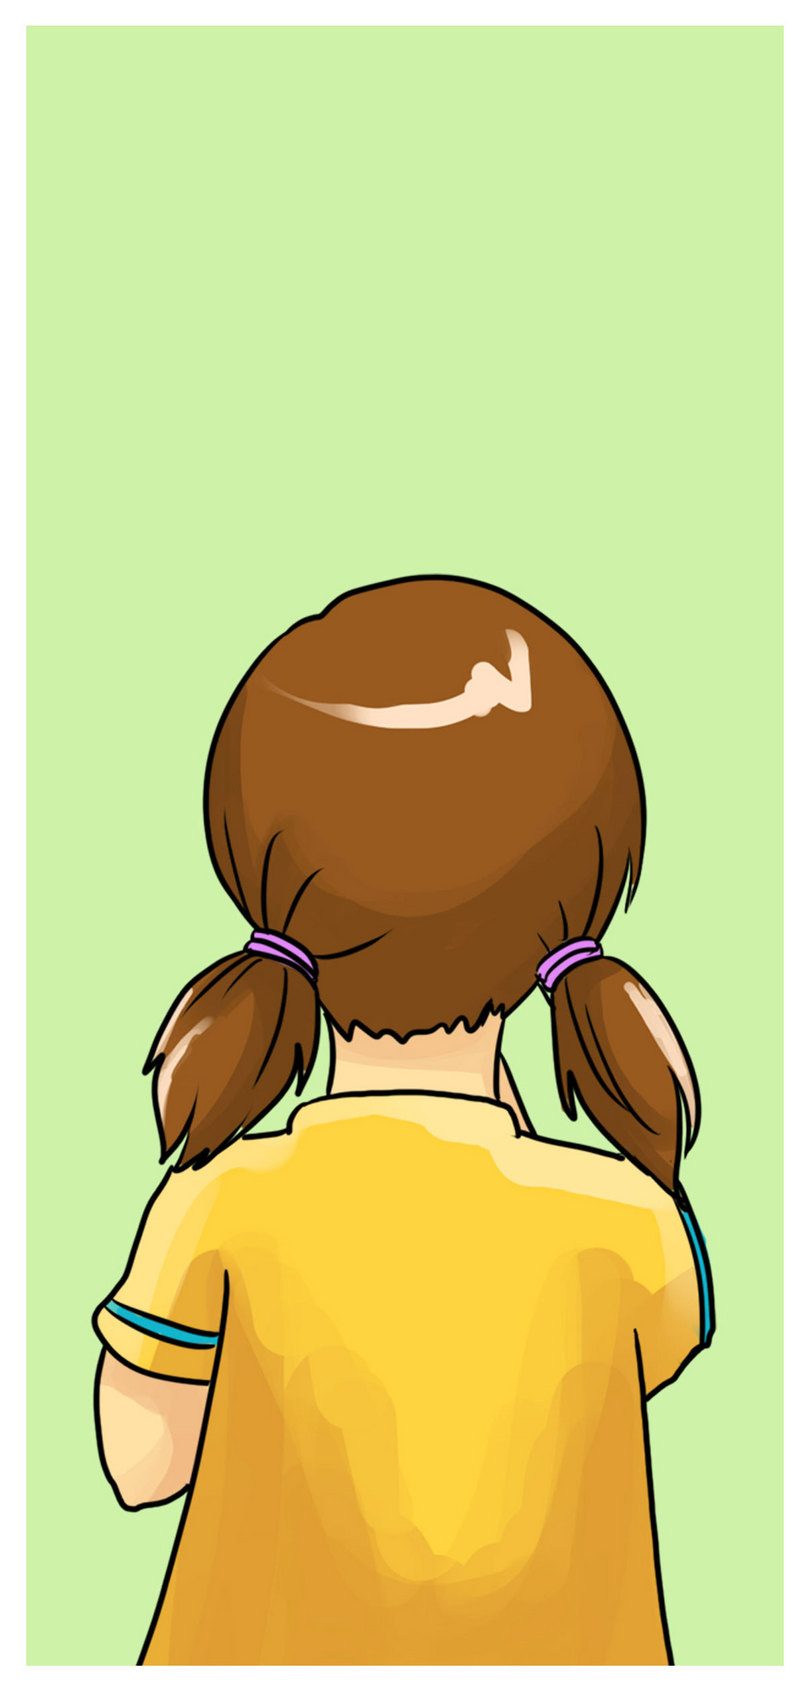 Cute Little Girl Cell Phone Wallpaper - Cartoon , HD Wallpaper & Backgrounds